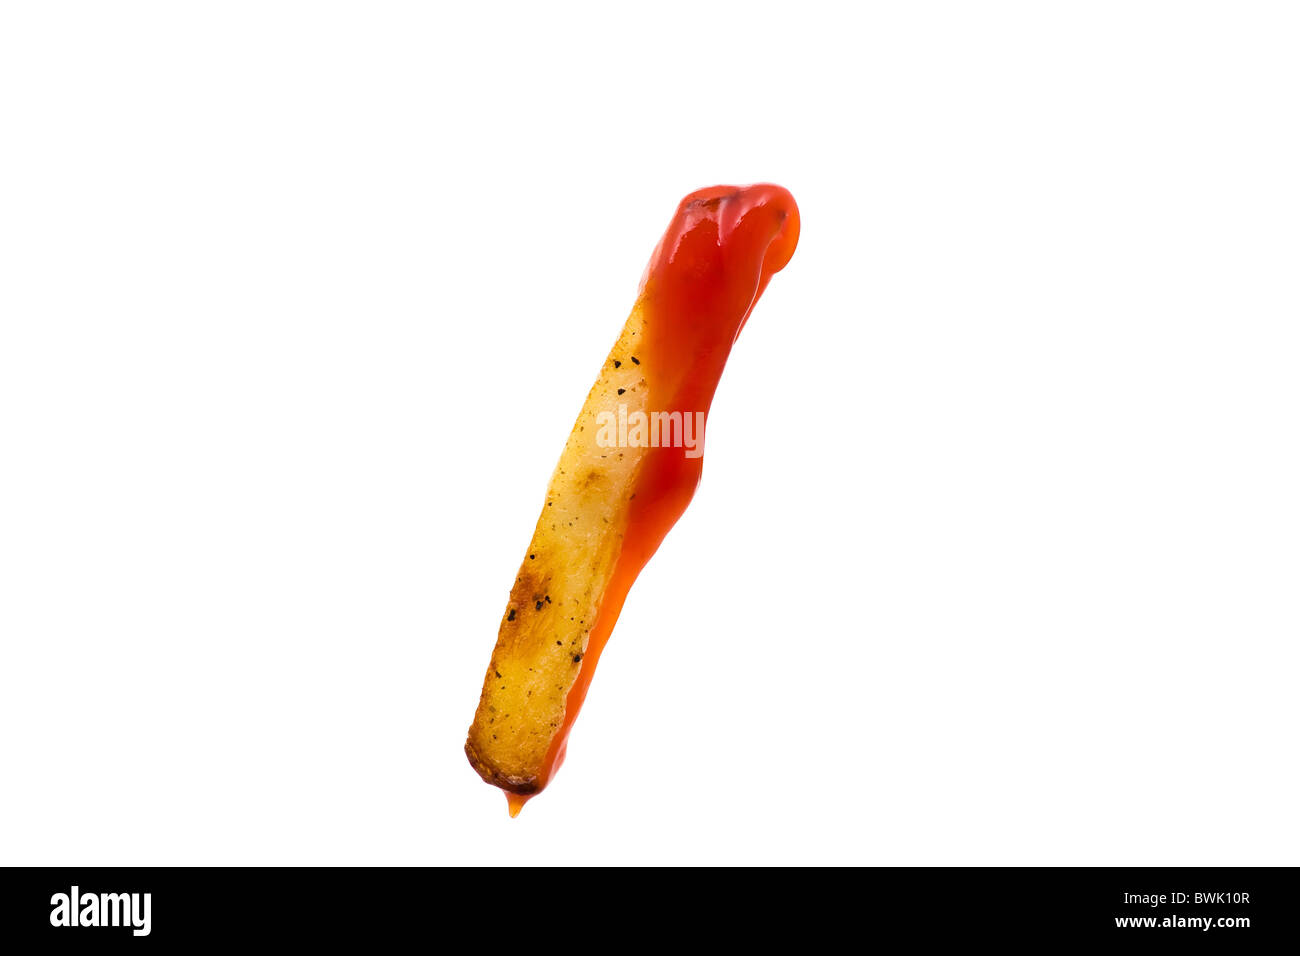 Fait main unique frite avec du ketchup isolé sur fond blanc Banque D'Images